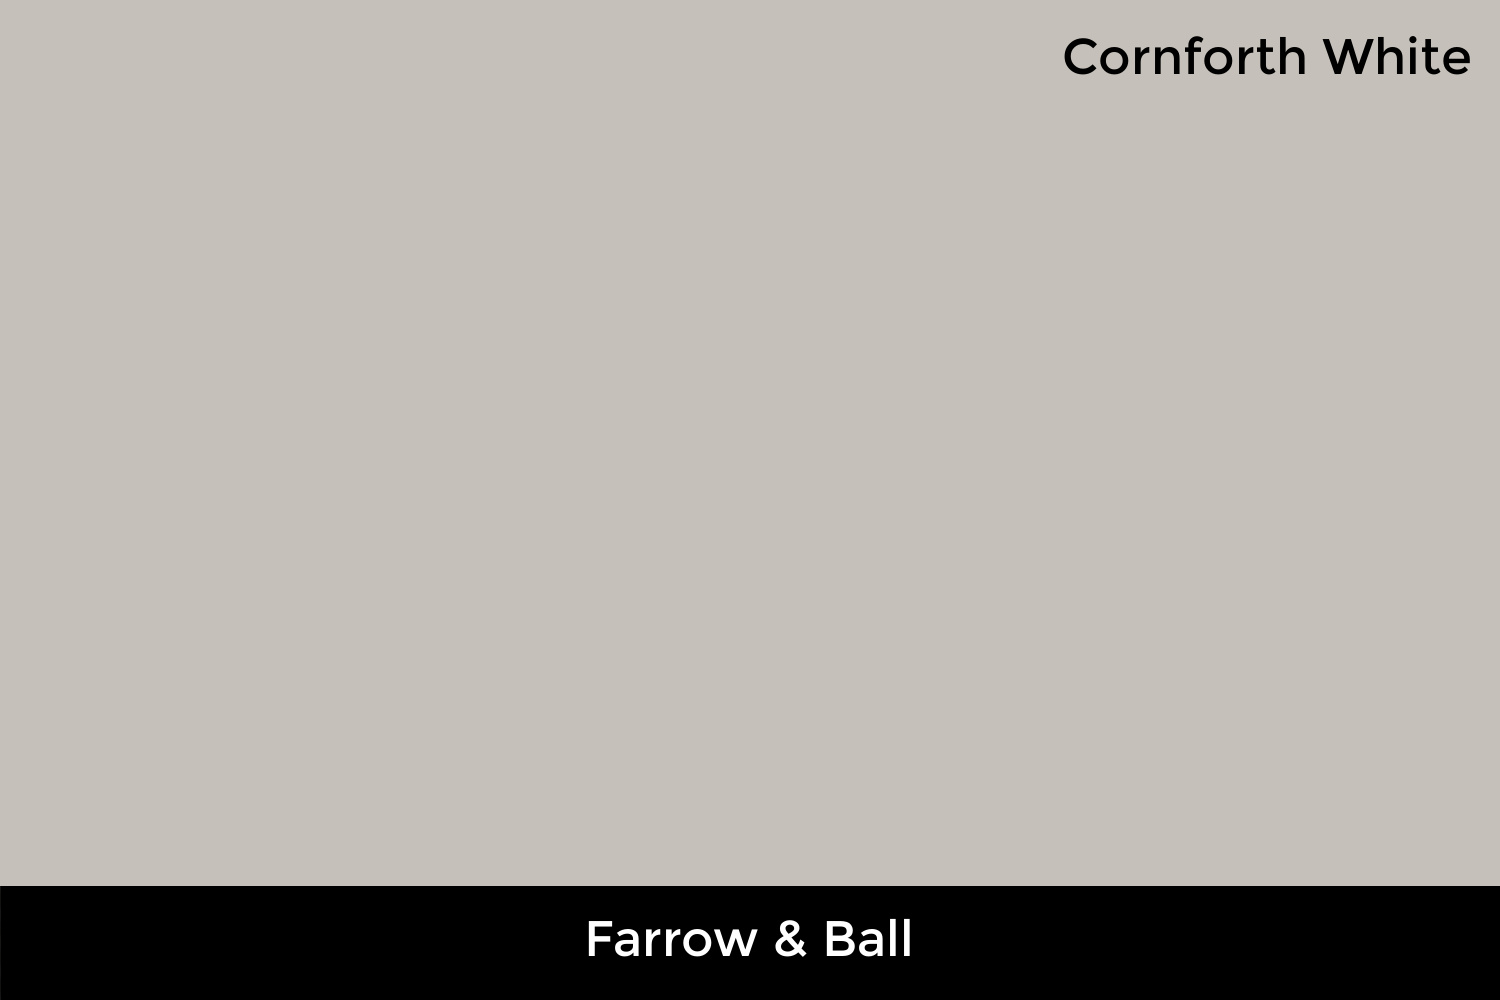 Best High-End: Farrow & Ball